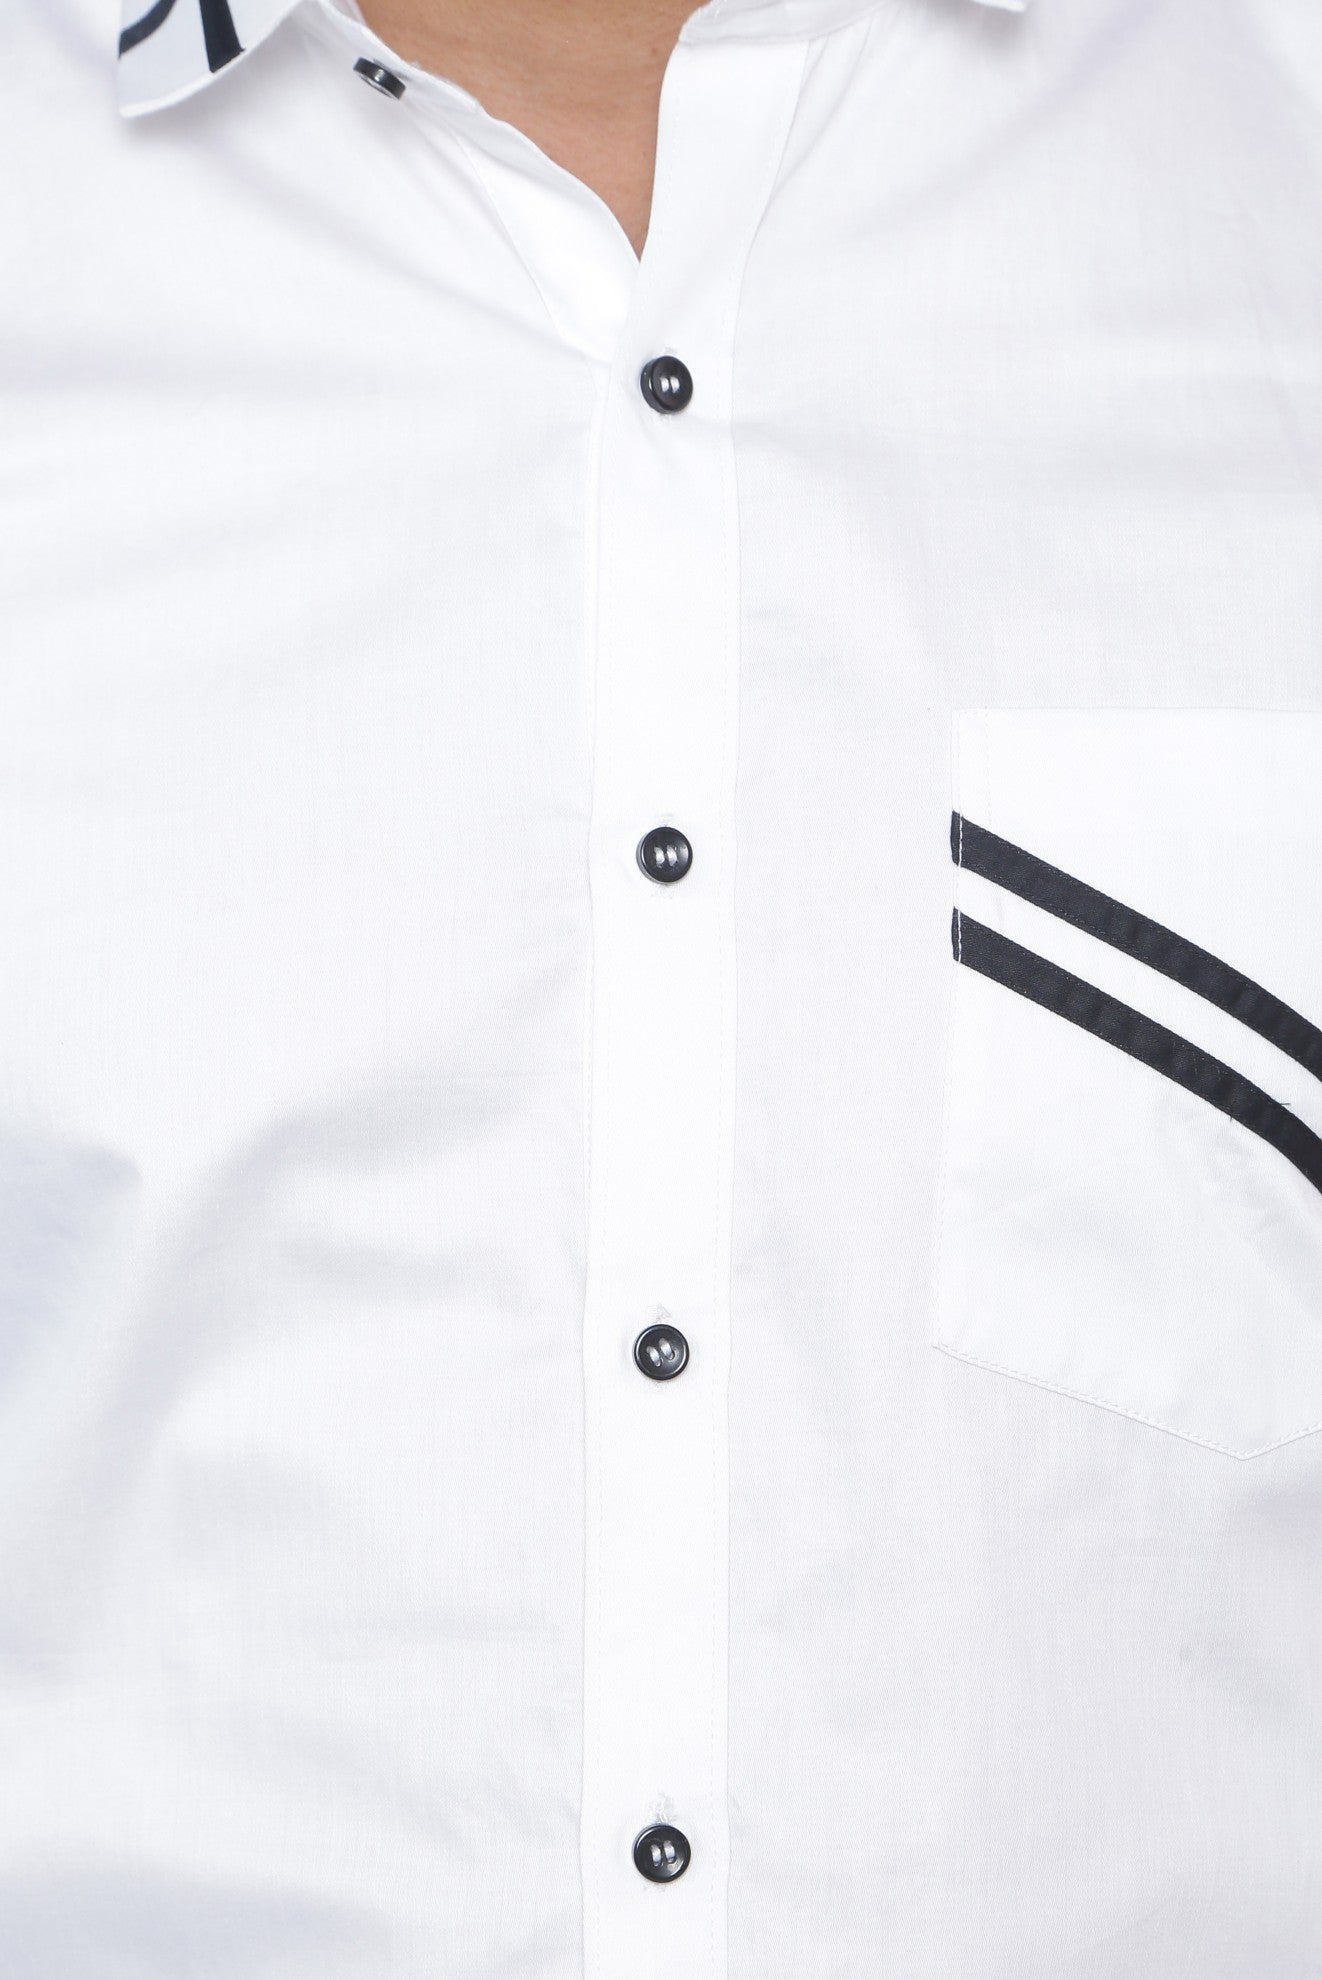 Cross White Pocket Shirt